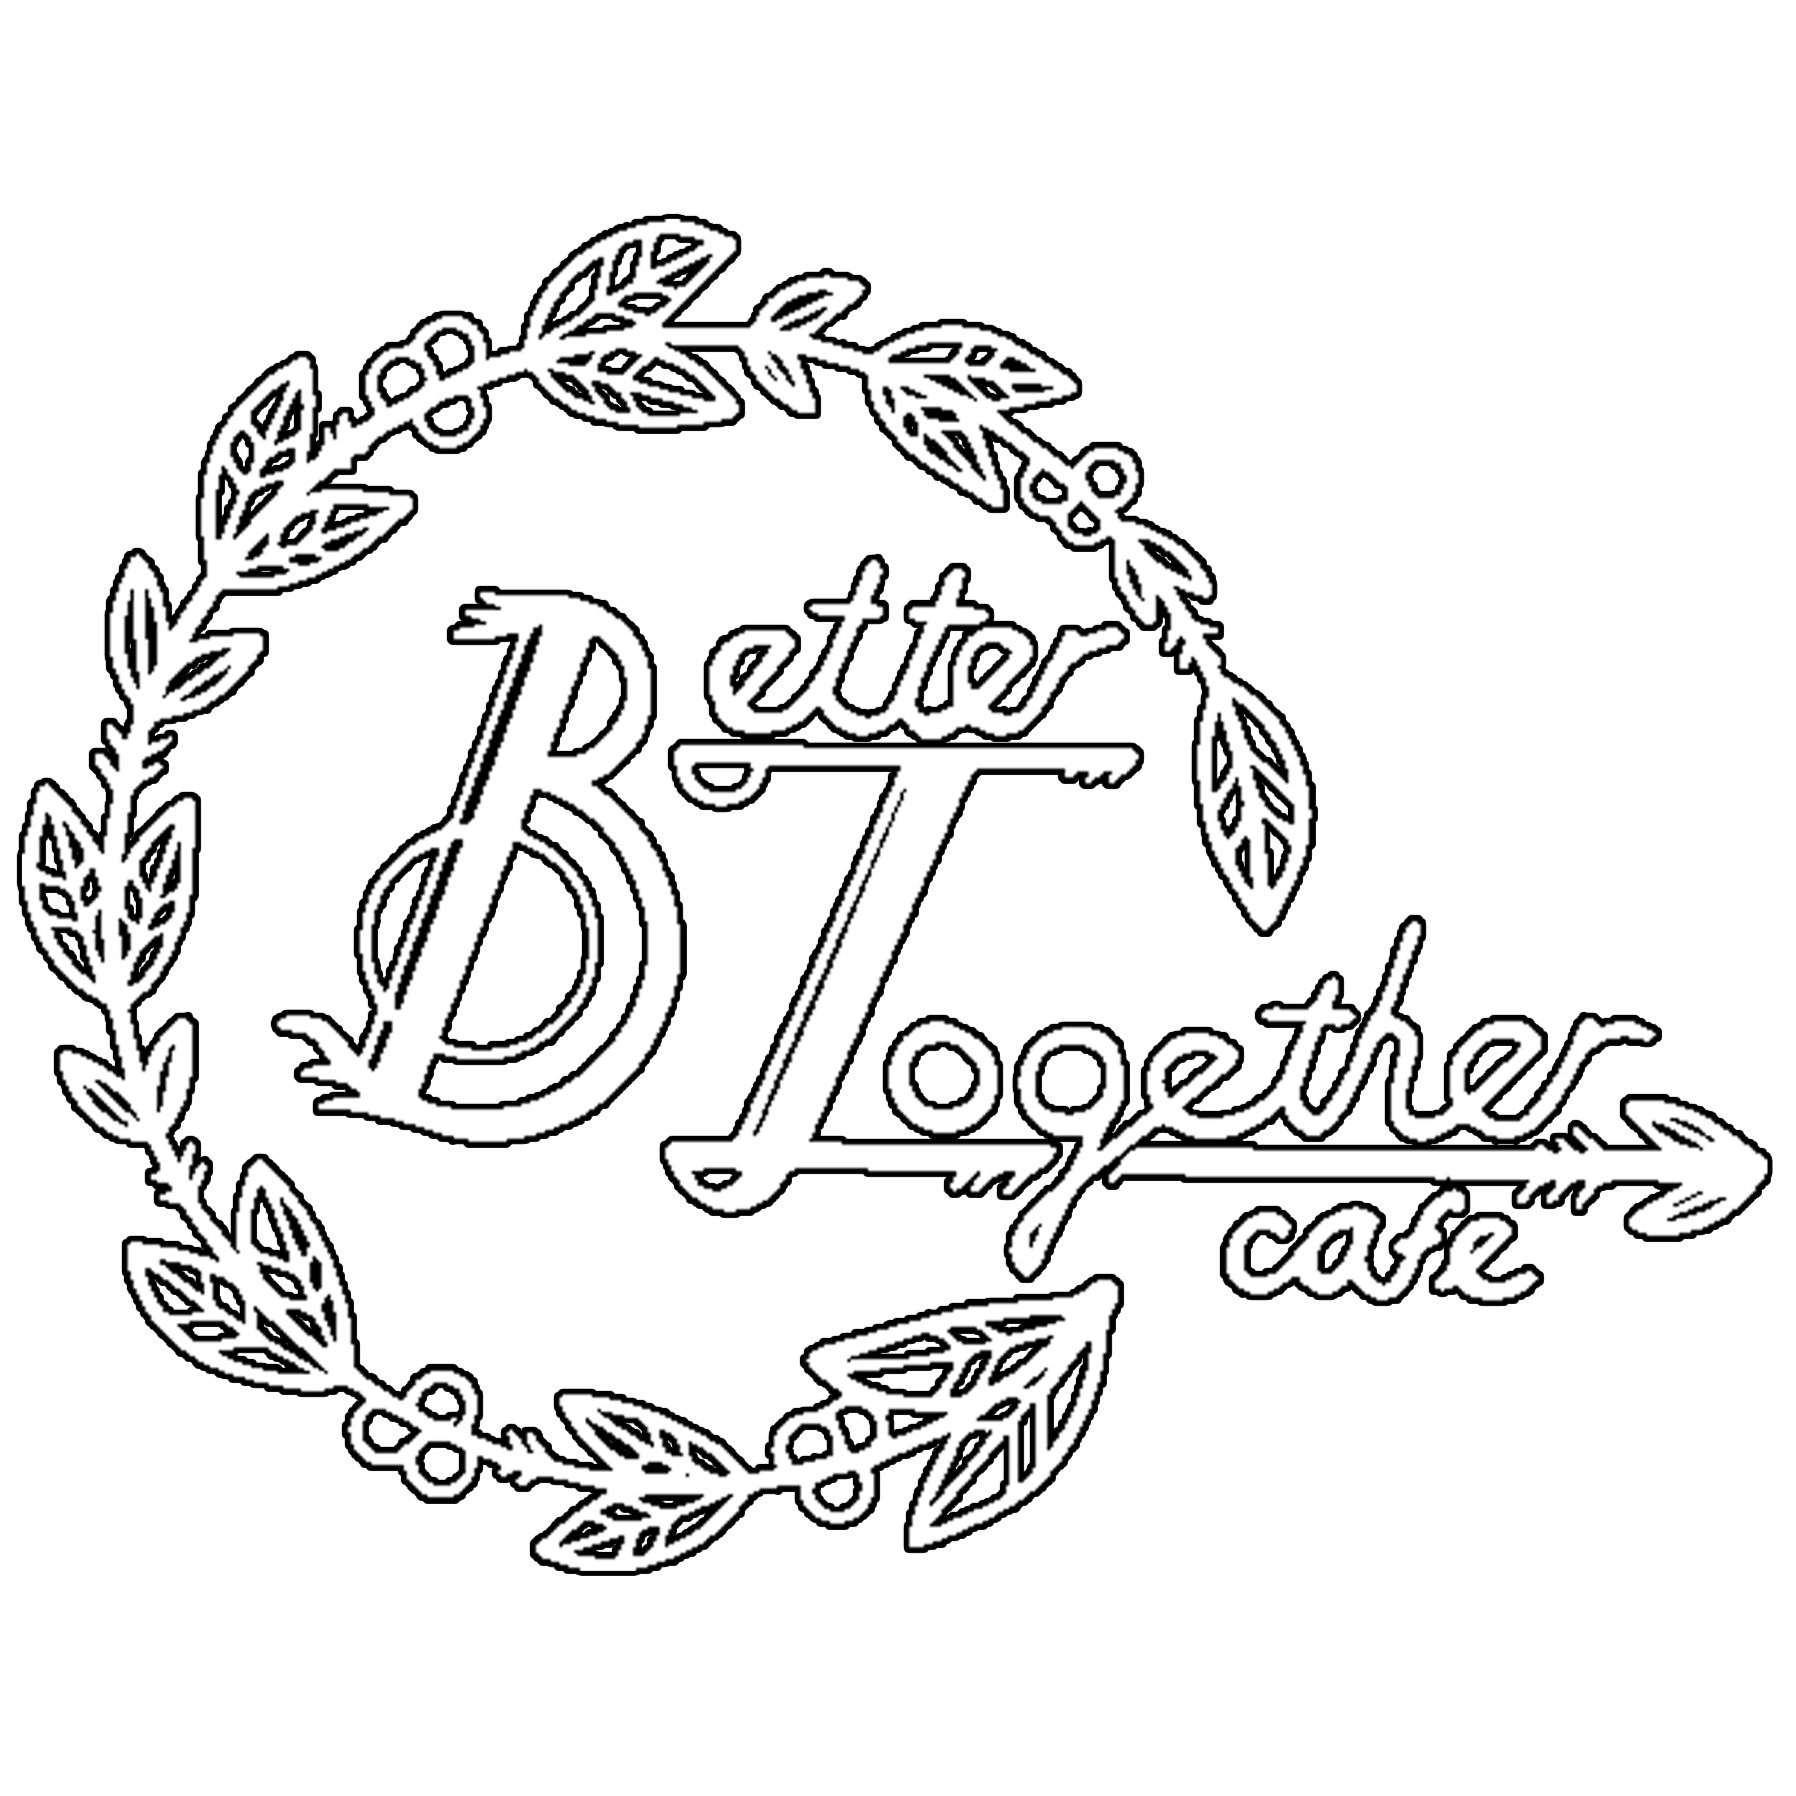 Better+Together+Cafe+Food+Truck+Logo.jpg